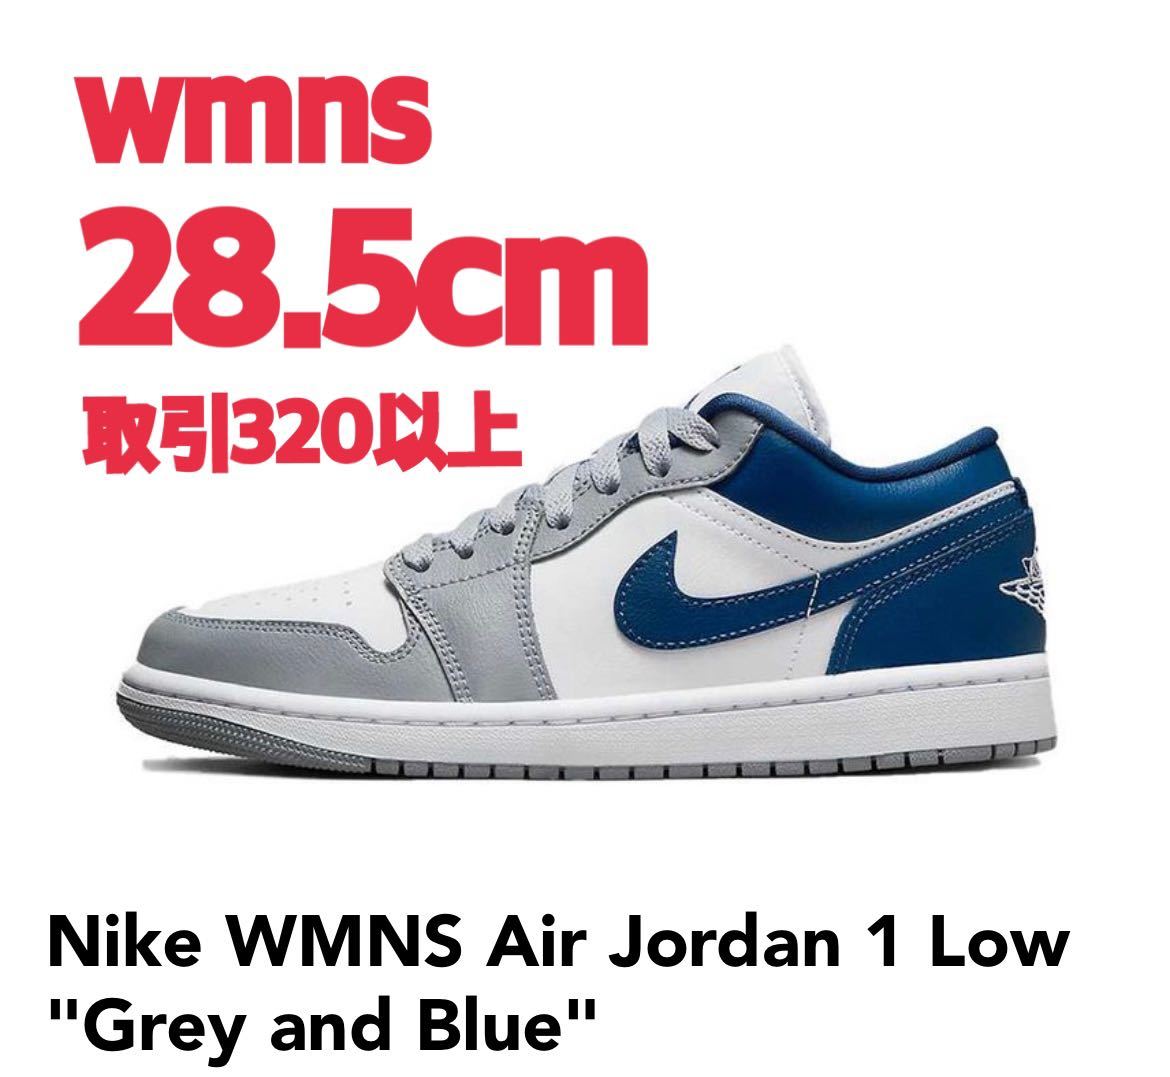 限定価格セール 破格値下げ Nike WMNS Air Jordan 1 Low Grey and Blue 28.5cm ナイキ ウィメンズ エアジョーダン1 ロー グレー アンド ブルー US11.5 importpojazdow.pl importpojazdow.pl